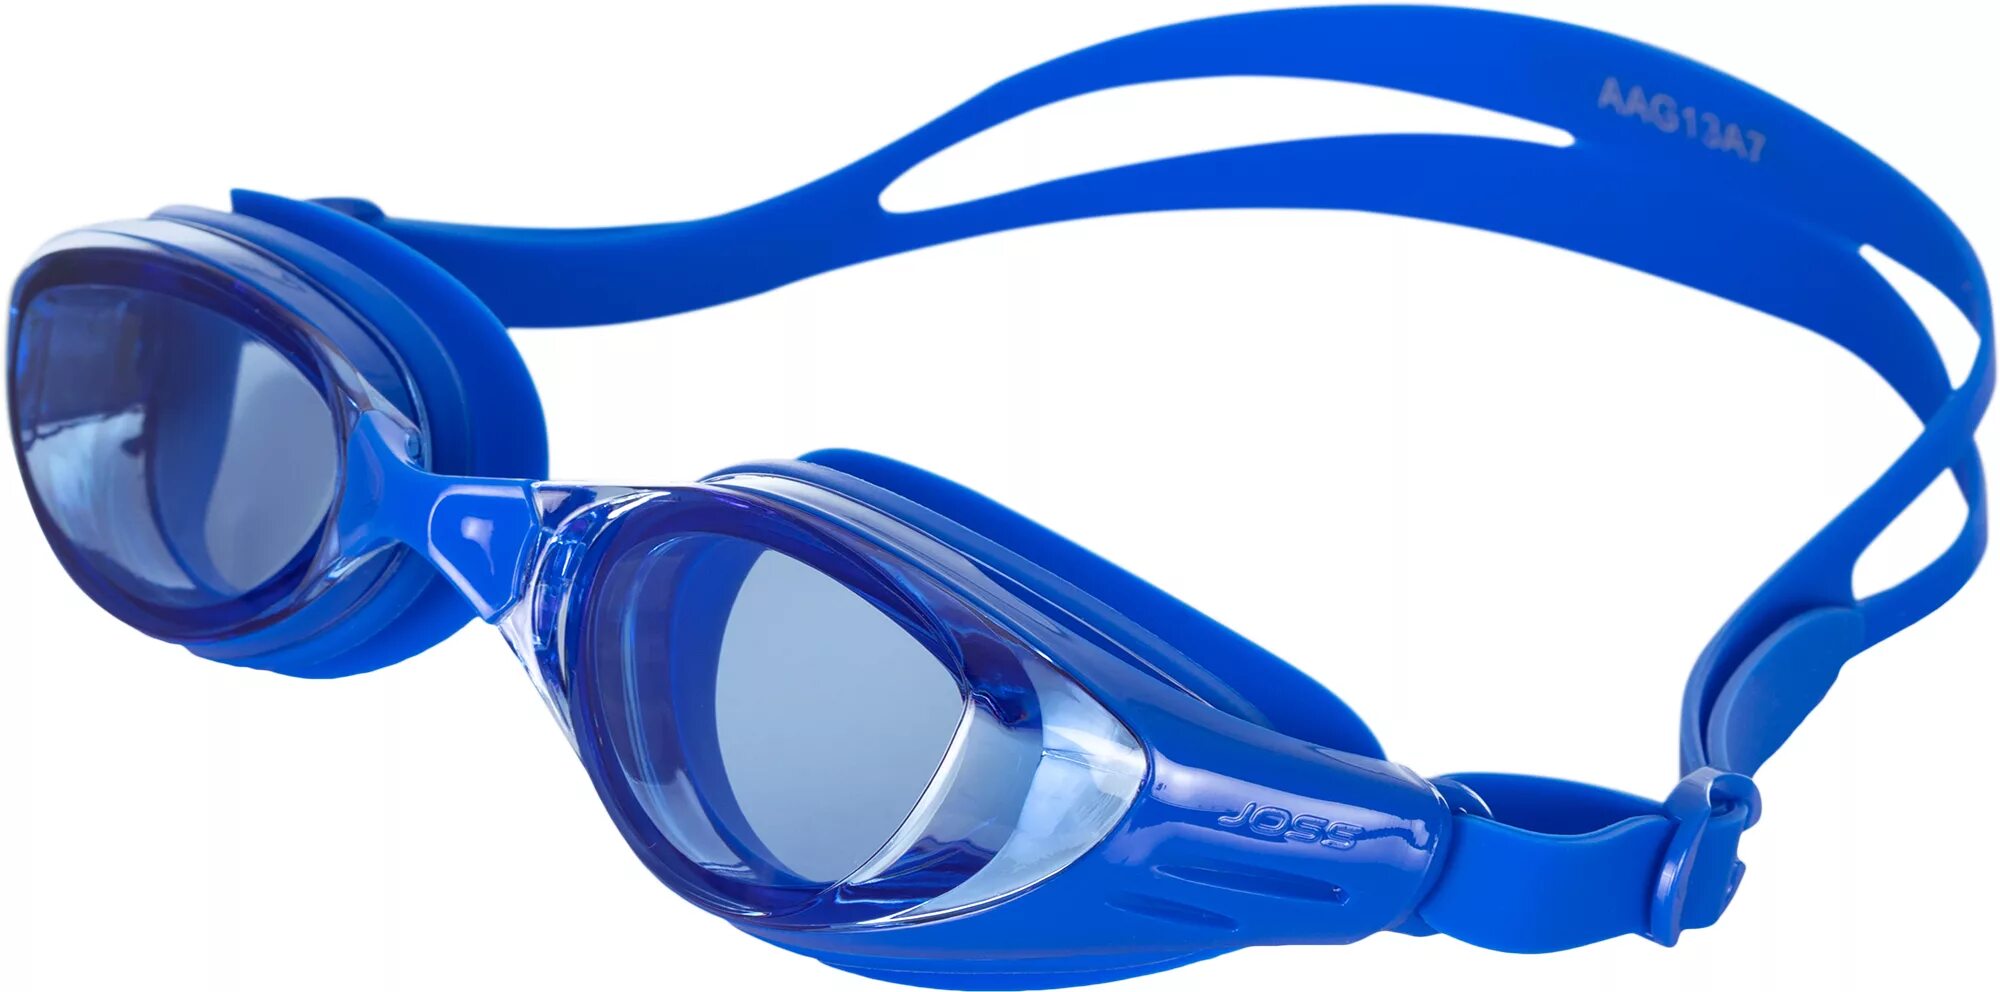 Очки для бассейна хорошие. Очки для плавания Joss aag13a7. Очки Joss 102128 для плавания. Очки для плавания Joss Swim Goggles. Joss 519a очки для плавания.